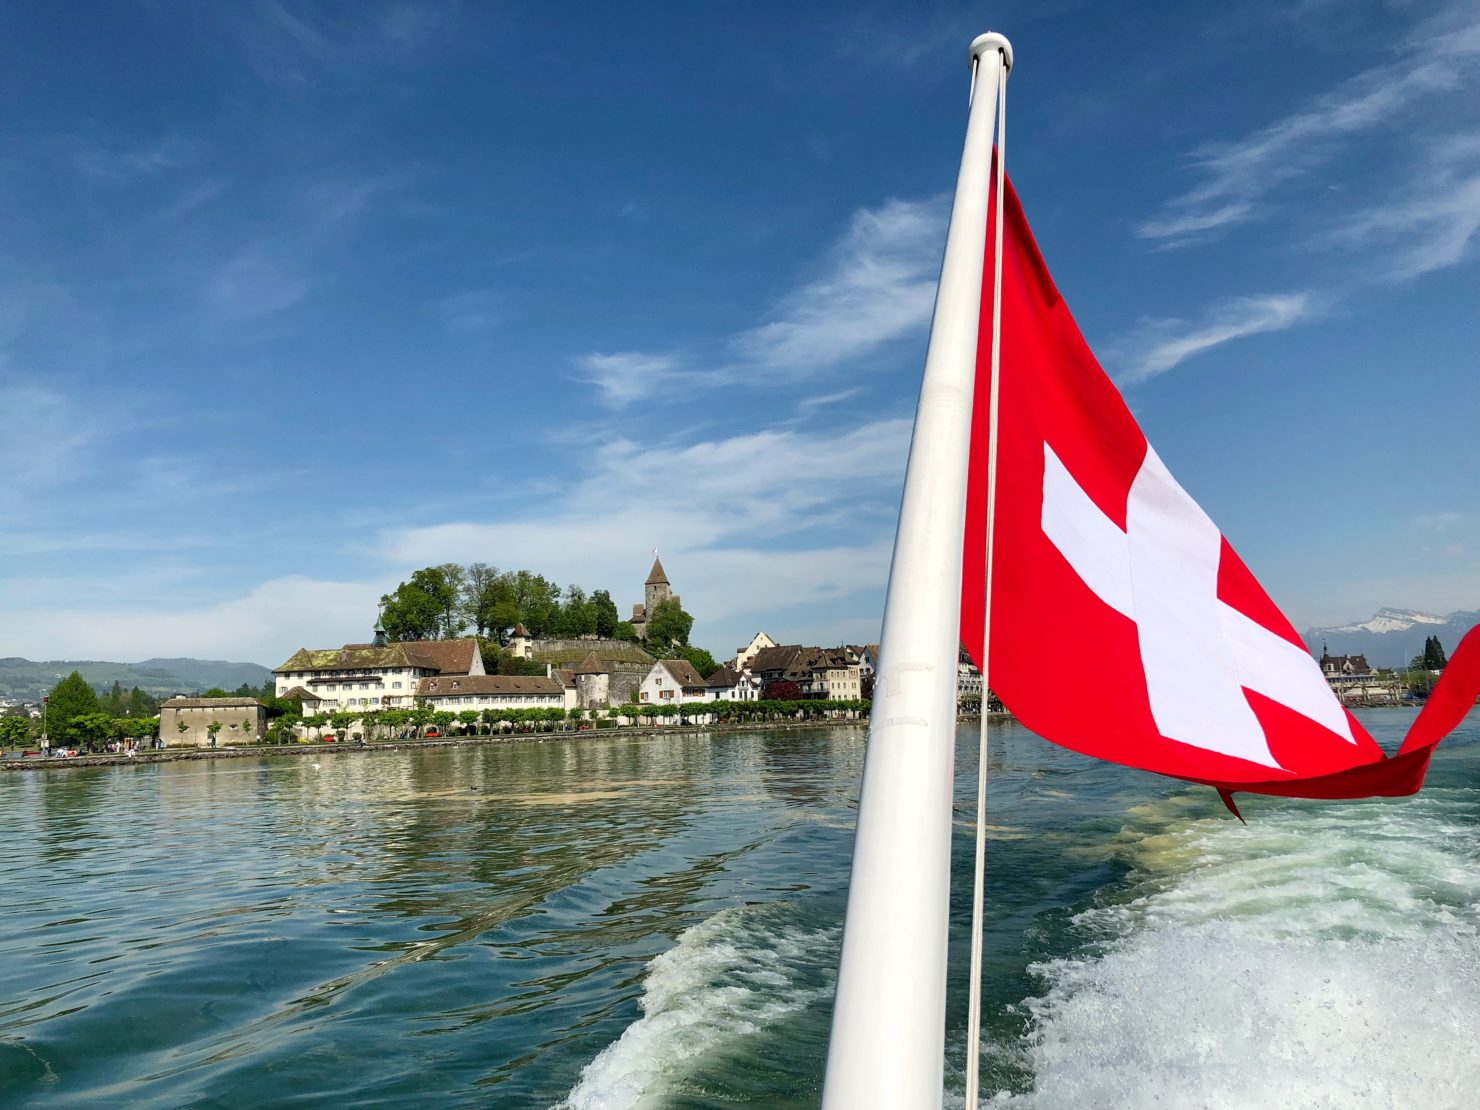 Schifffahrt auf dem Zürichsee: Von Rapperswil über die Insel Ufenau nach Zürich